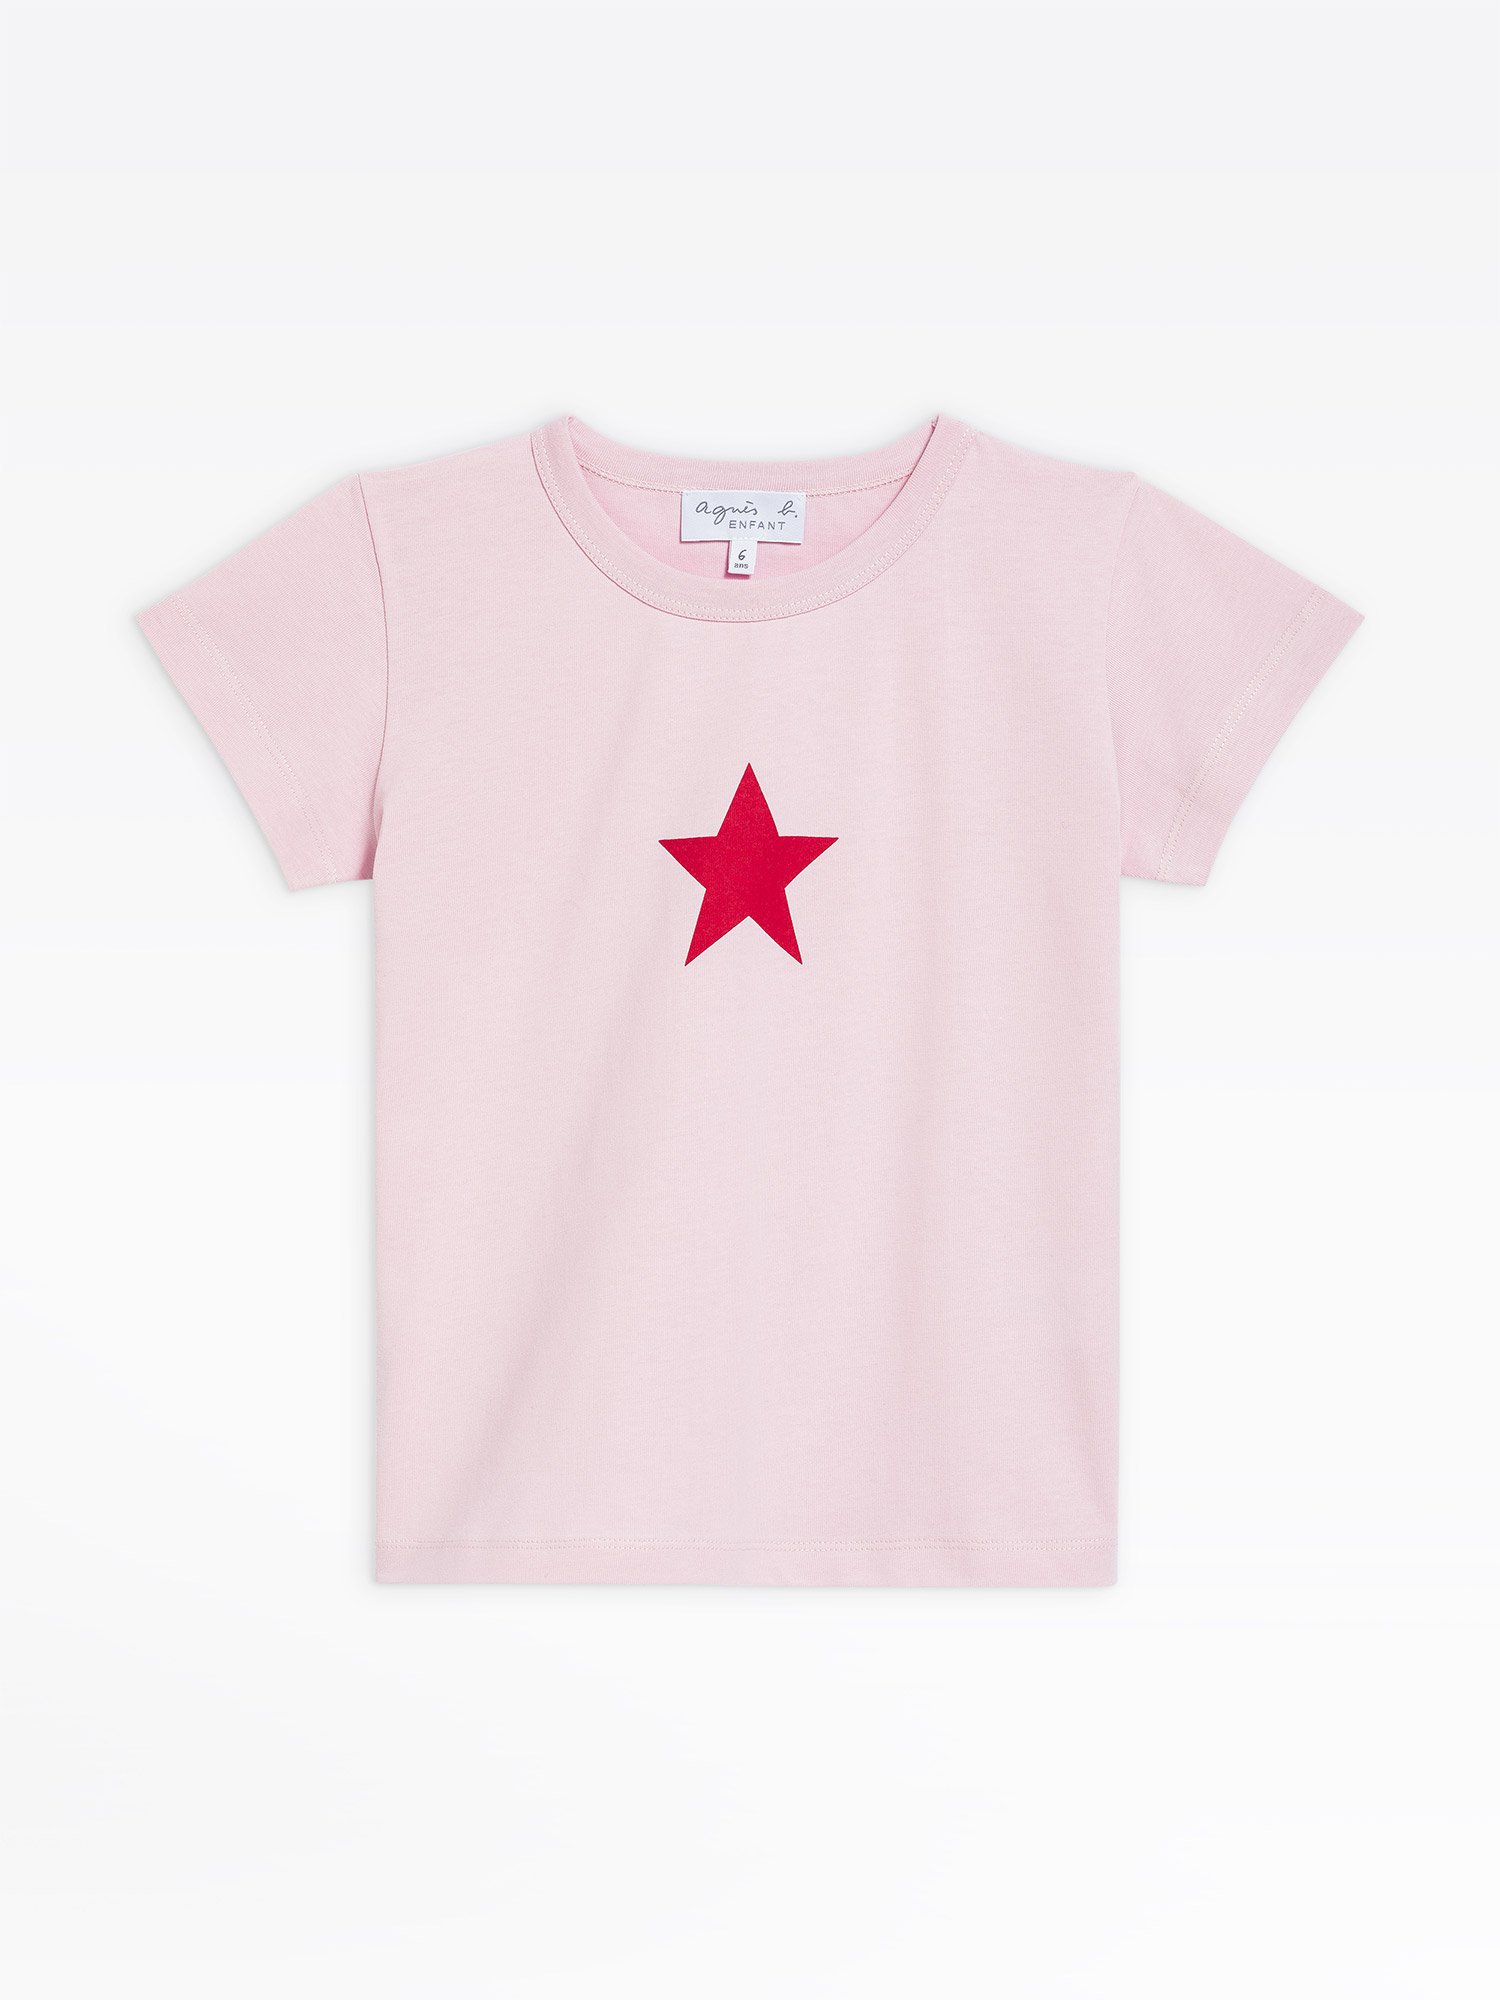 pink jersey shirt